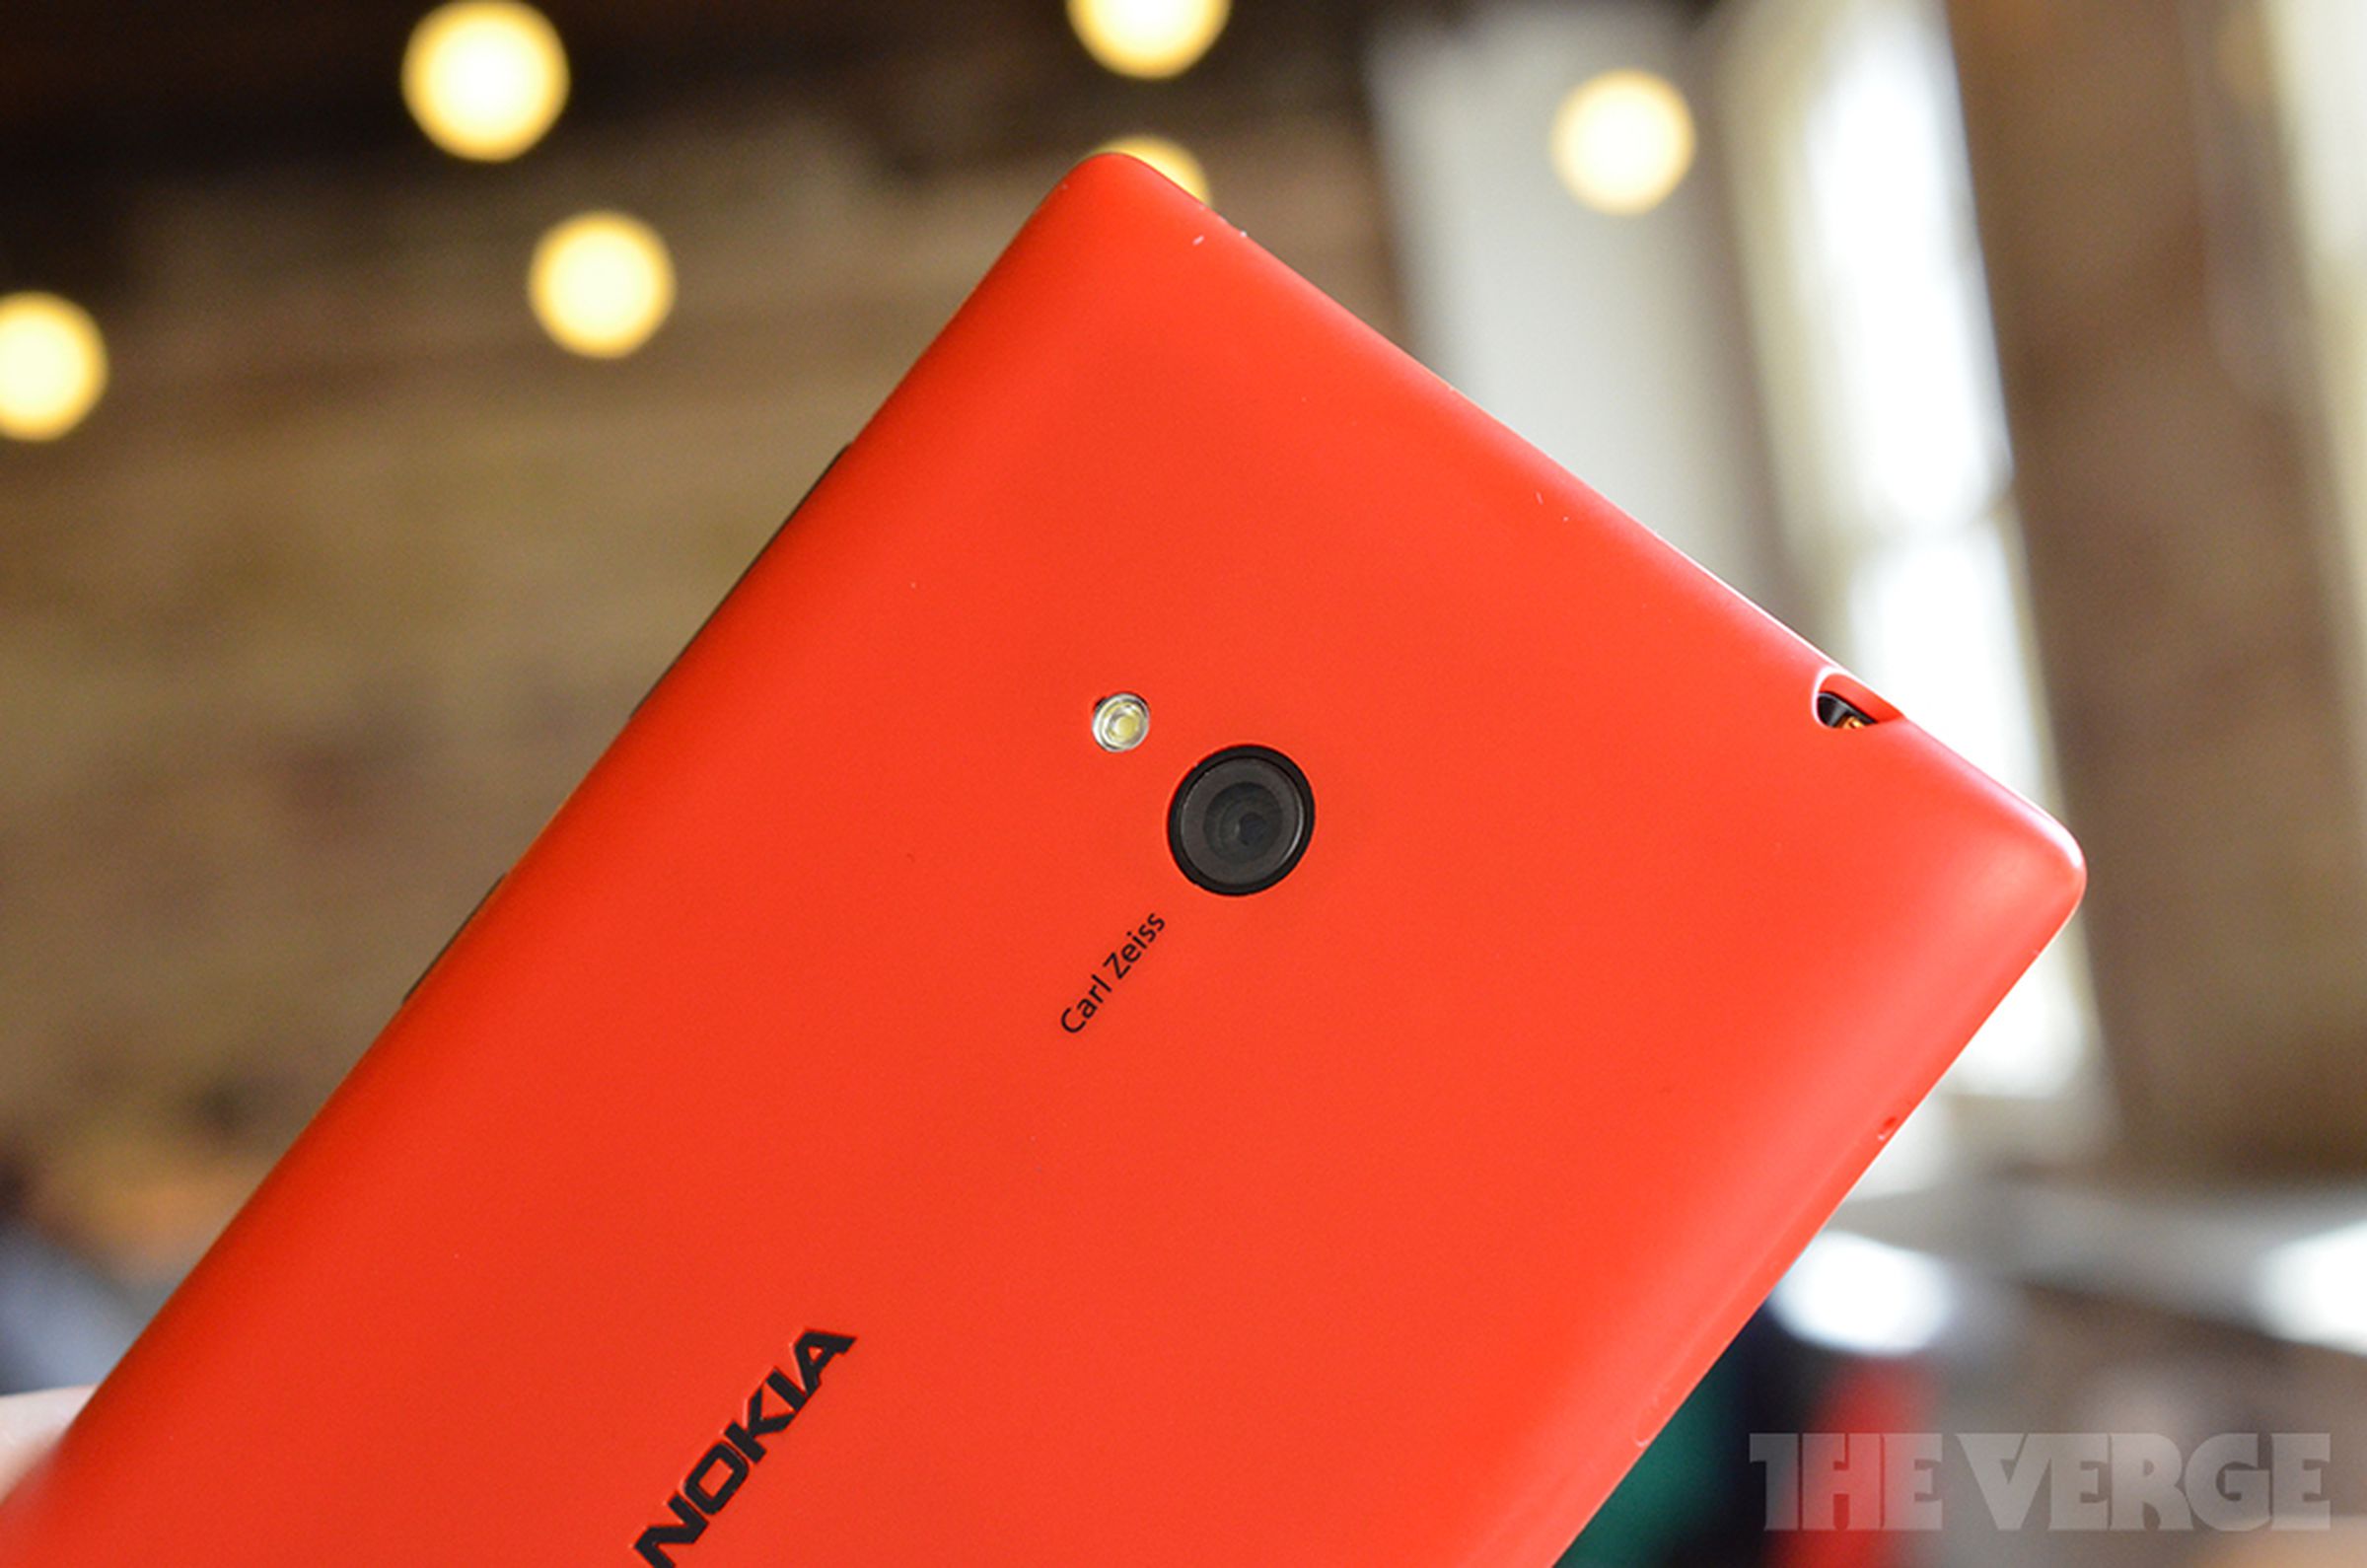 Nokia Lumia 720 photos